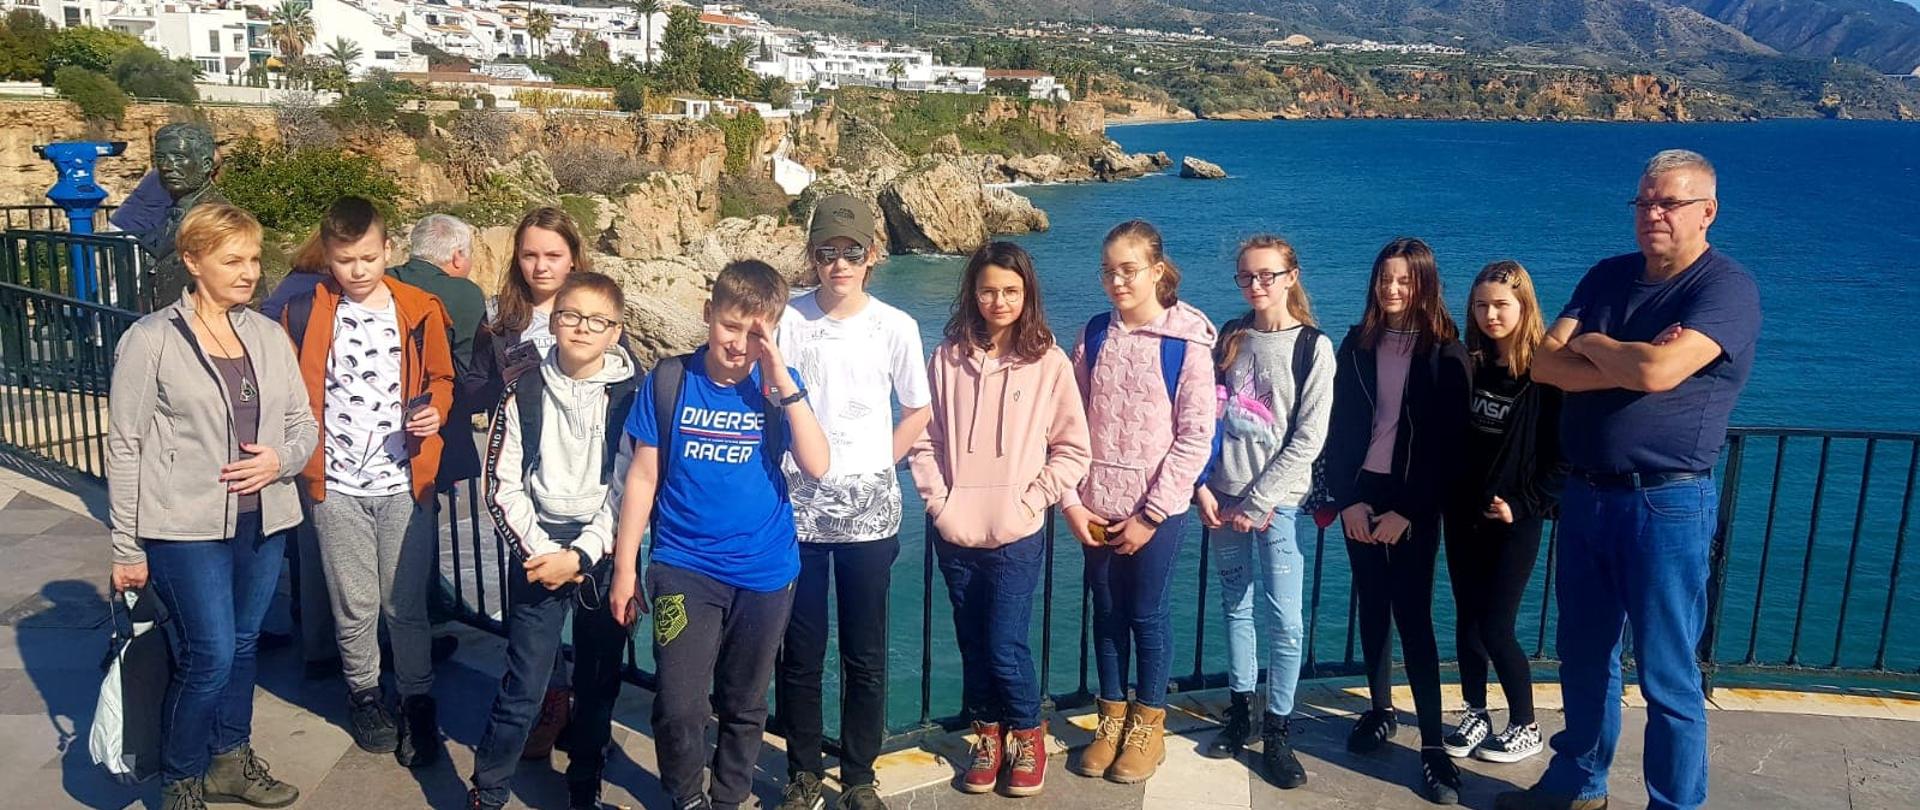 Uczniowie i nauczyciele z białowieskiej szkoły podczas pobytu w Hiszpanii - grupa pozuje na tle morza